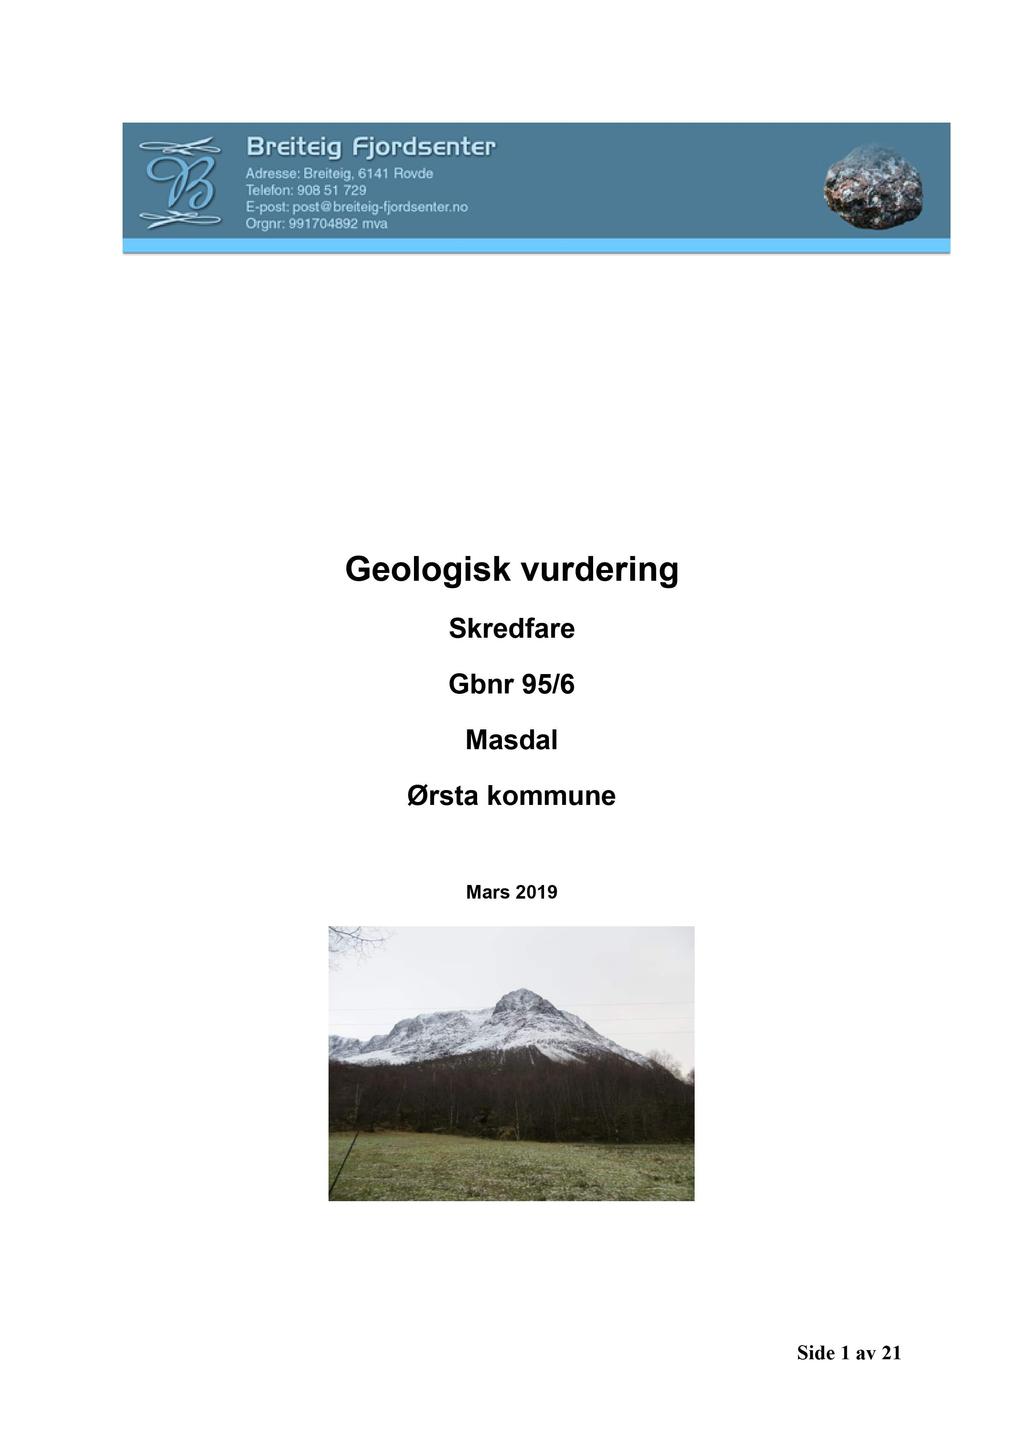 Geologisk vurdering Skredfare Gbnr 95/6